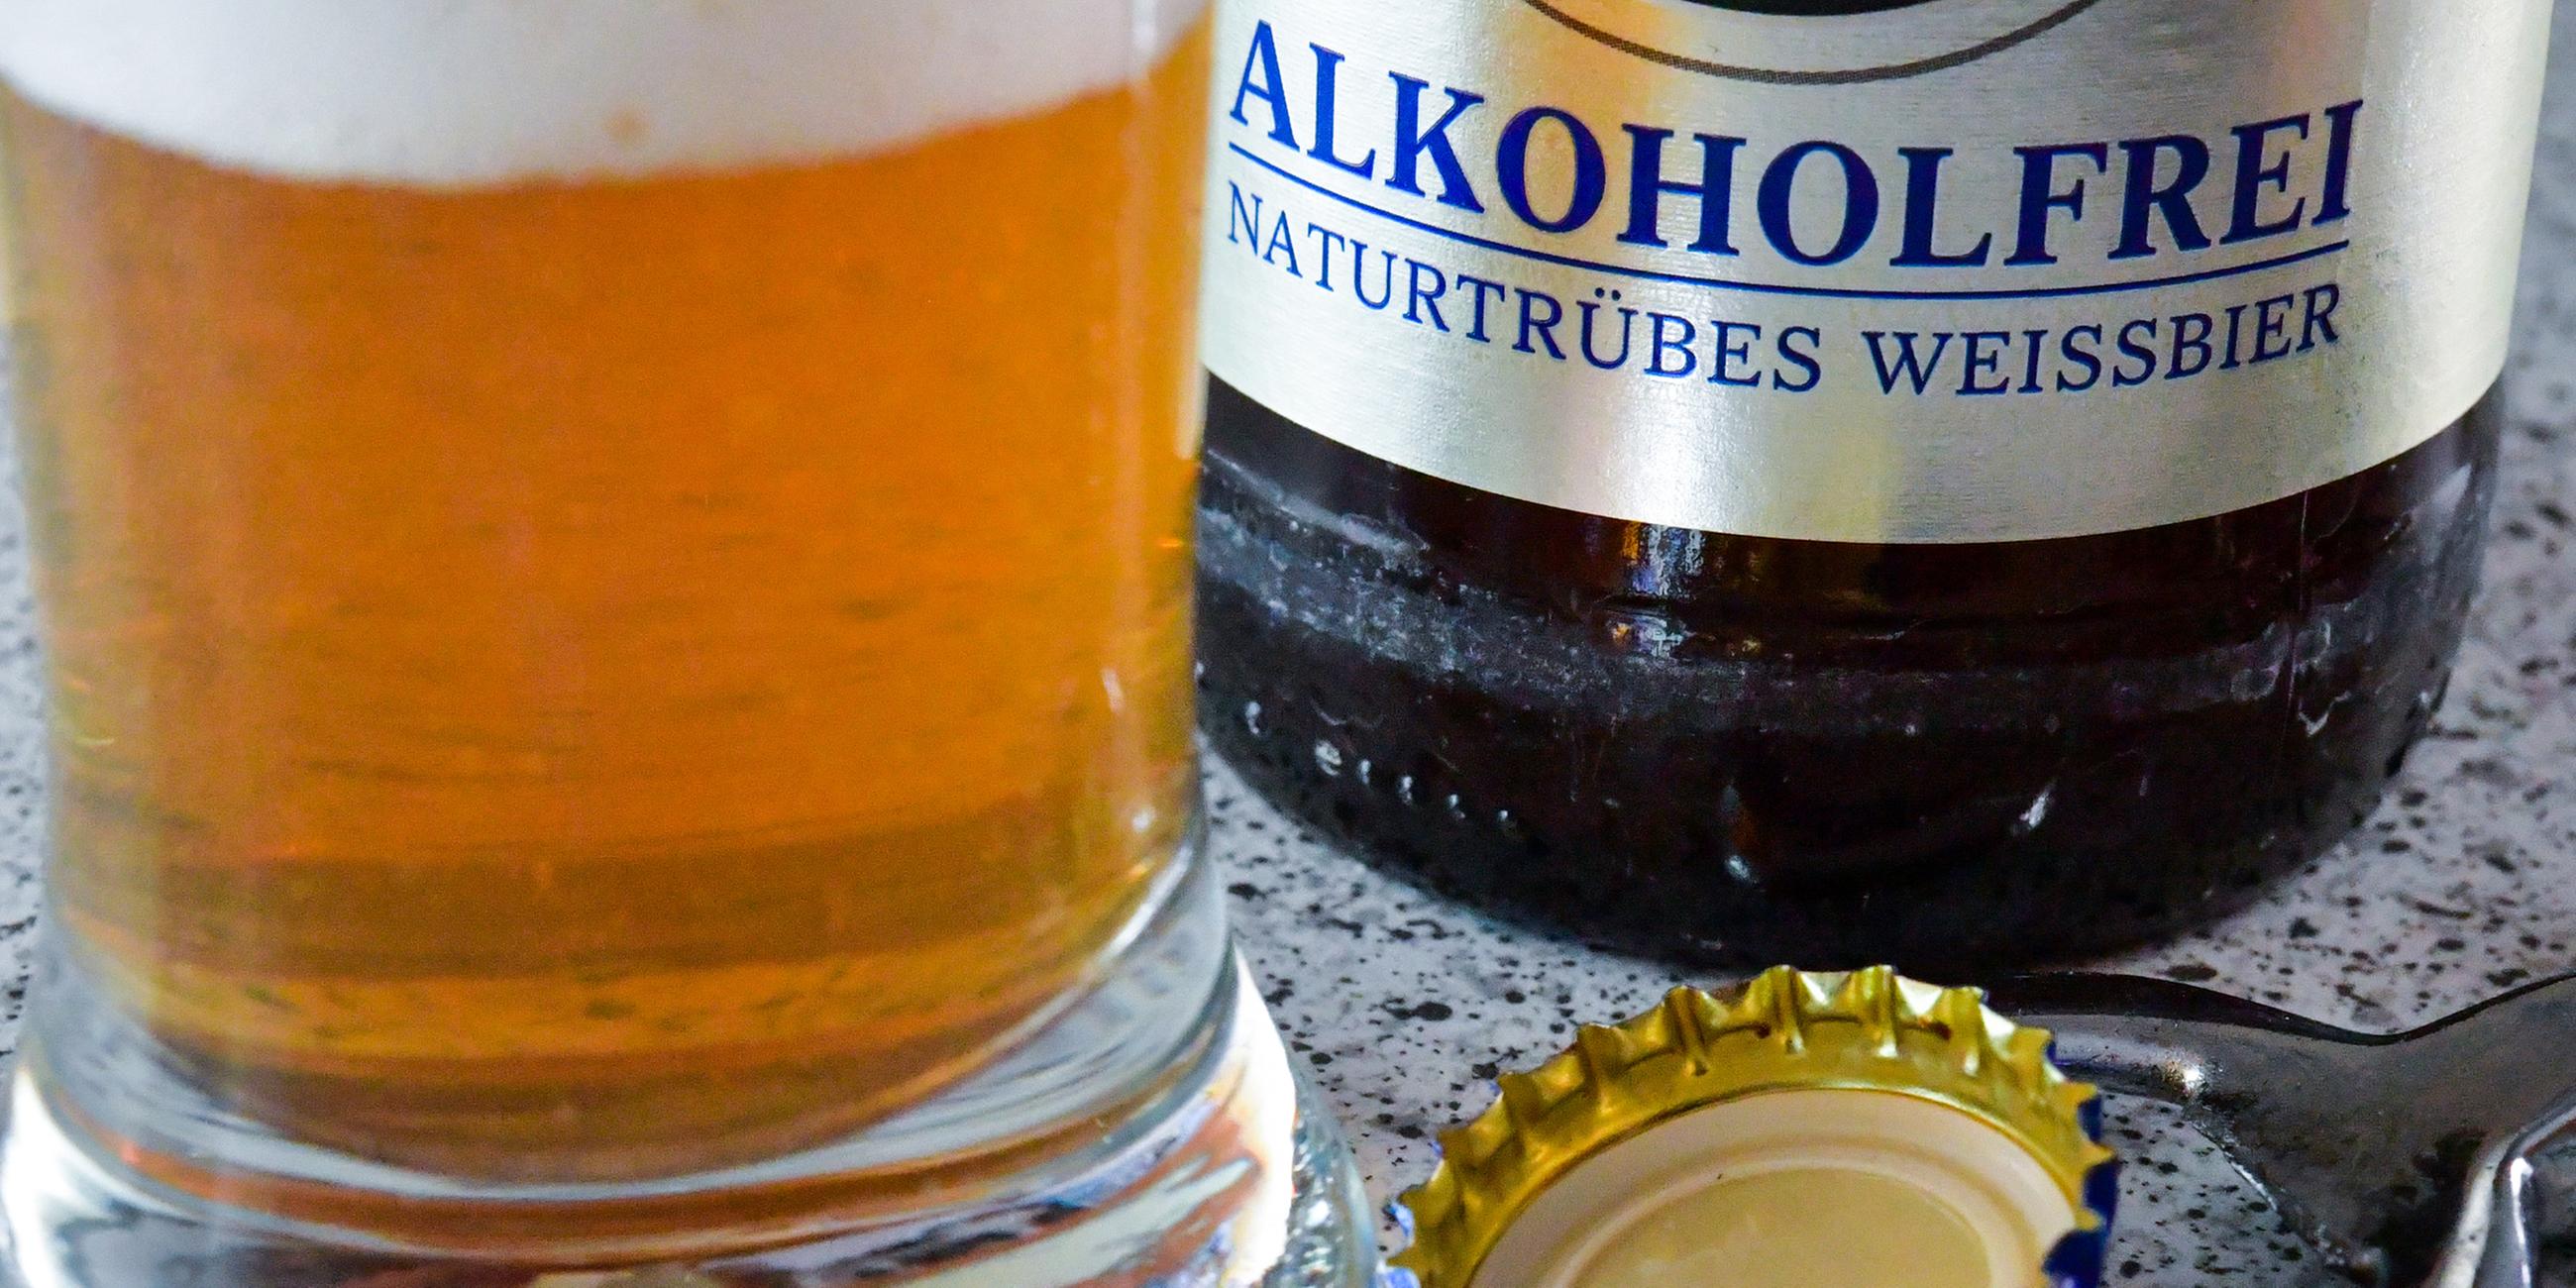 Alkoholfreies Bier in einem Glas neben einer Flasche mit der Aufschrift "Alkoholfrei - naturtrübes Weissbier"